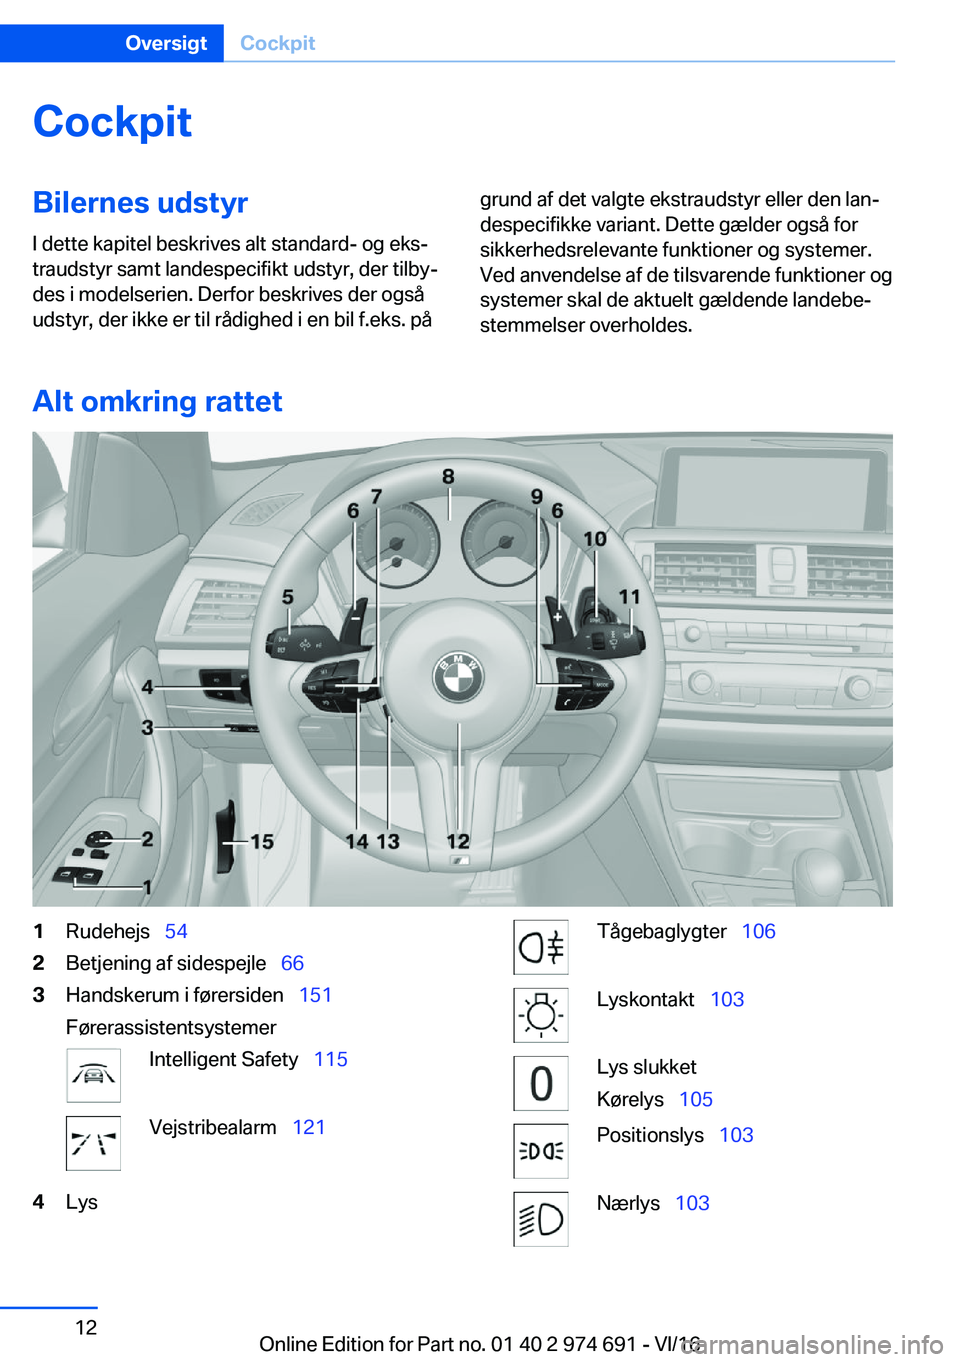 BMW M2 2017  InstruktionsbØger (in Danish) �C�o�c�k�p�i�t�B�i�l�e�r�n�e�s��u�d�s�t�y�r
�I� �d�e�t�t�e� �k�a�p�i�t�e�l� �b�e�s�k�r�i�v�e�s� �a�l�t� �s�t�a�n�d�a�r�d�-� �o�g� �e�k�sj
�t�r�a�u�d�s�t�y�r� �s�a�m�t� �l�a�n�d�e�s�p�e�c�i�f�i�k�t� 